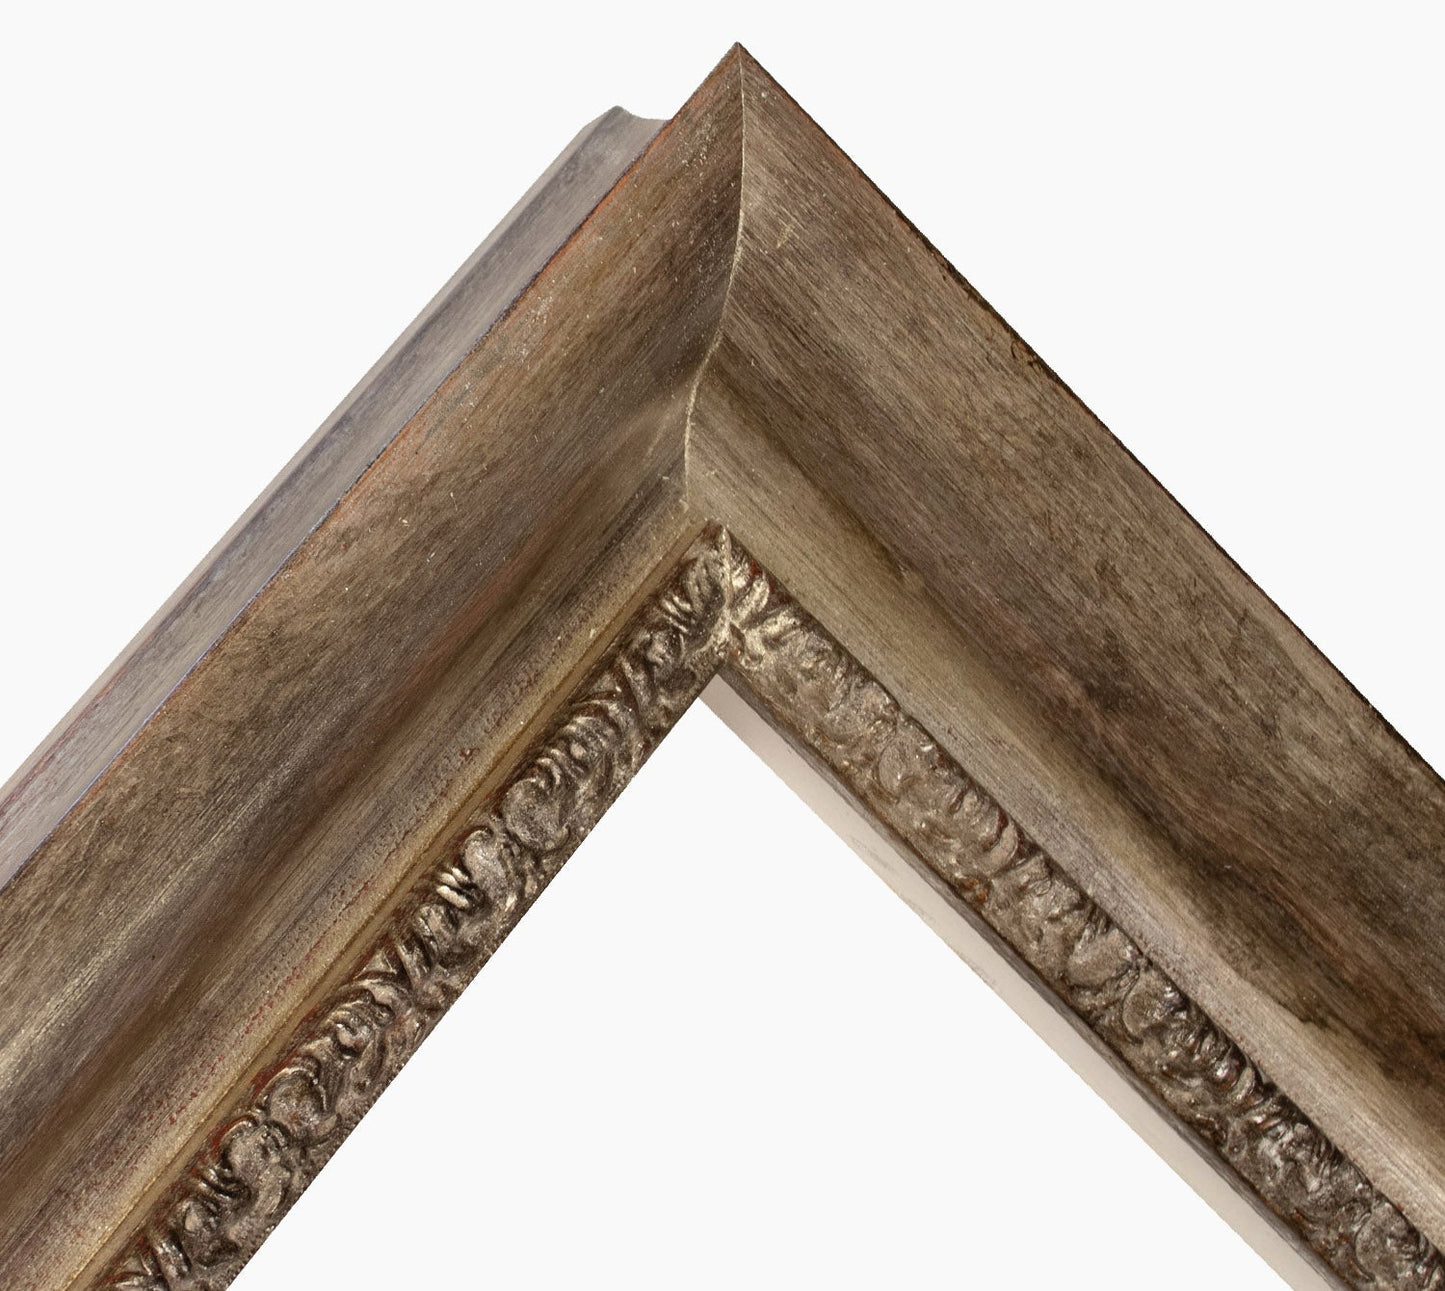 430.231 cadre en bois à la feuille d'argent antique mesure de profil 65x55 mm Lombarda cornici S.n.c.